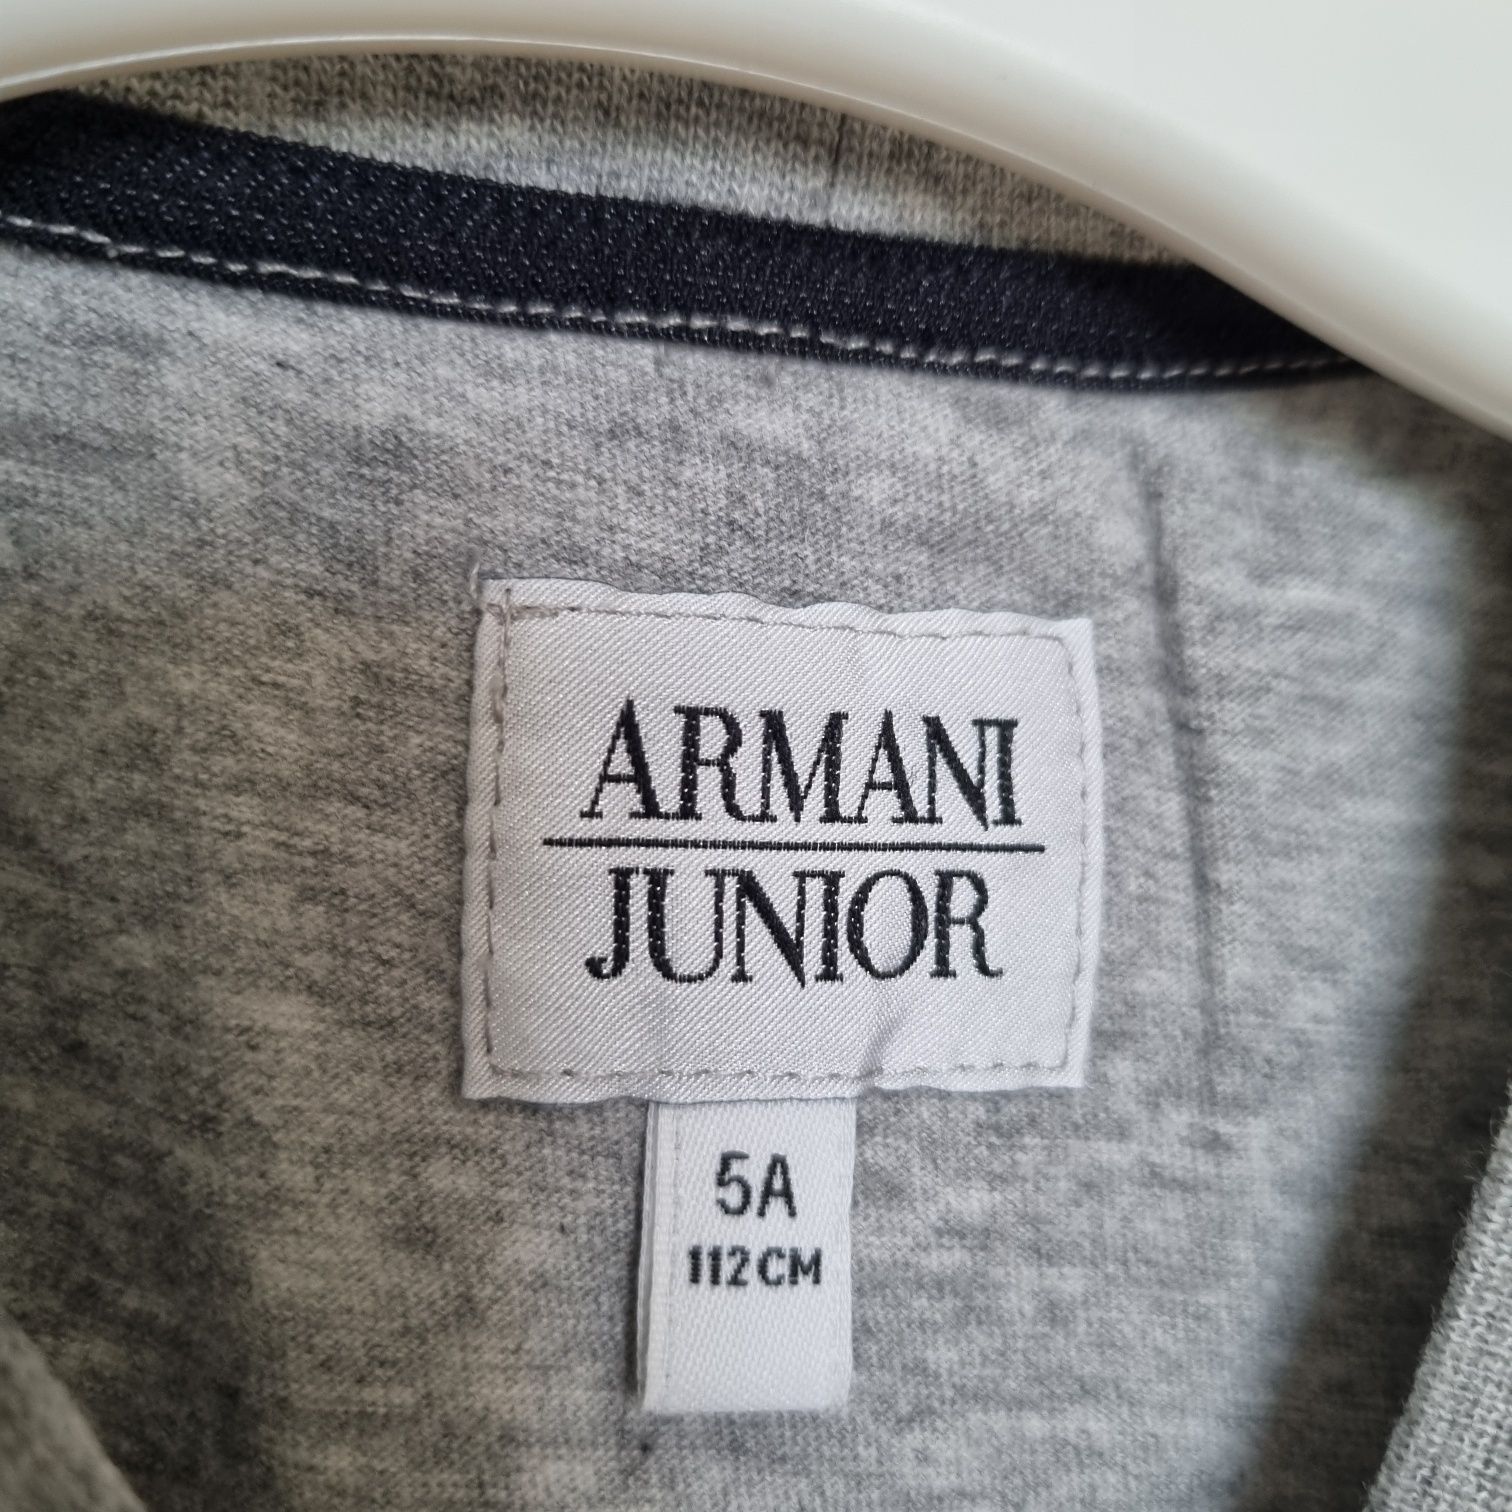 Koszulka chłopięca Armani Junior 5 lat 112 cm